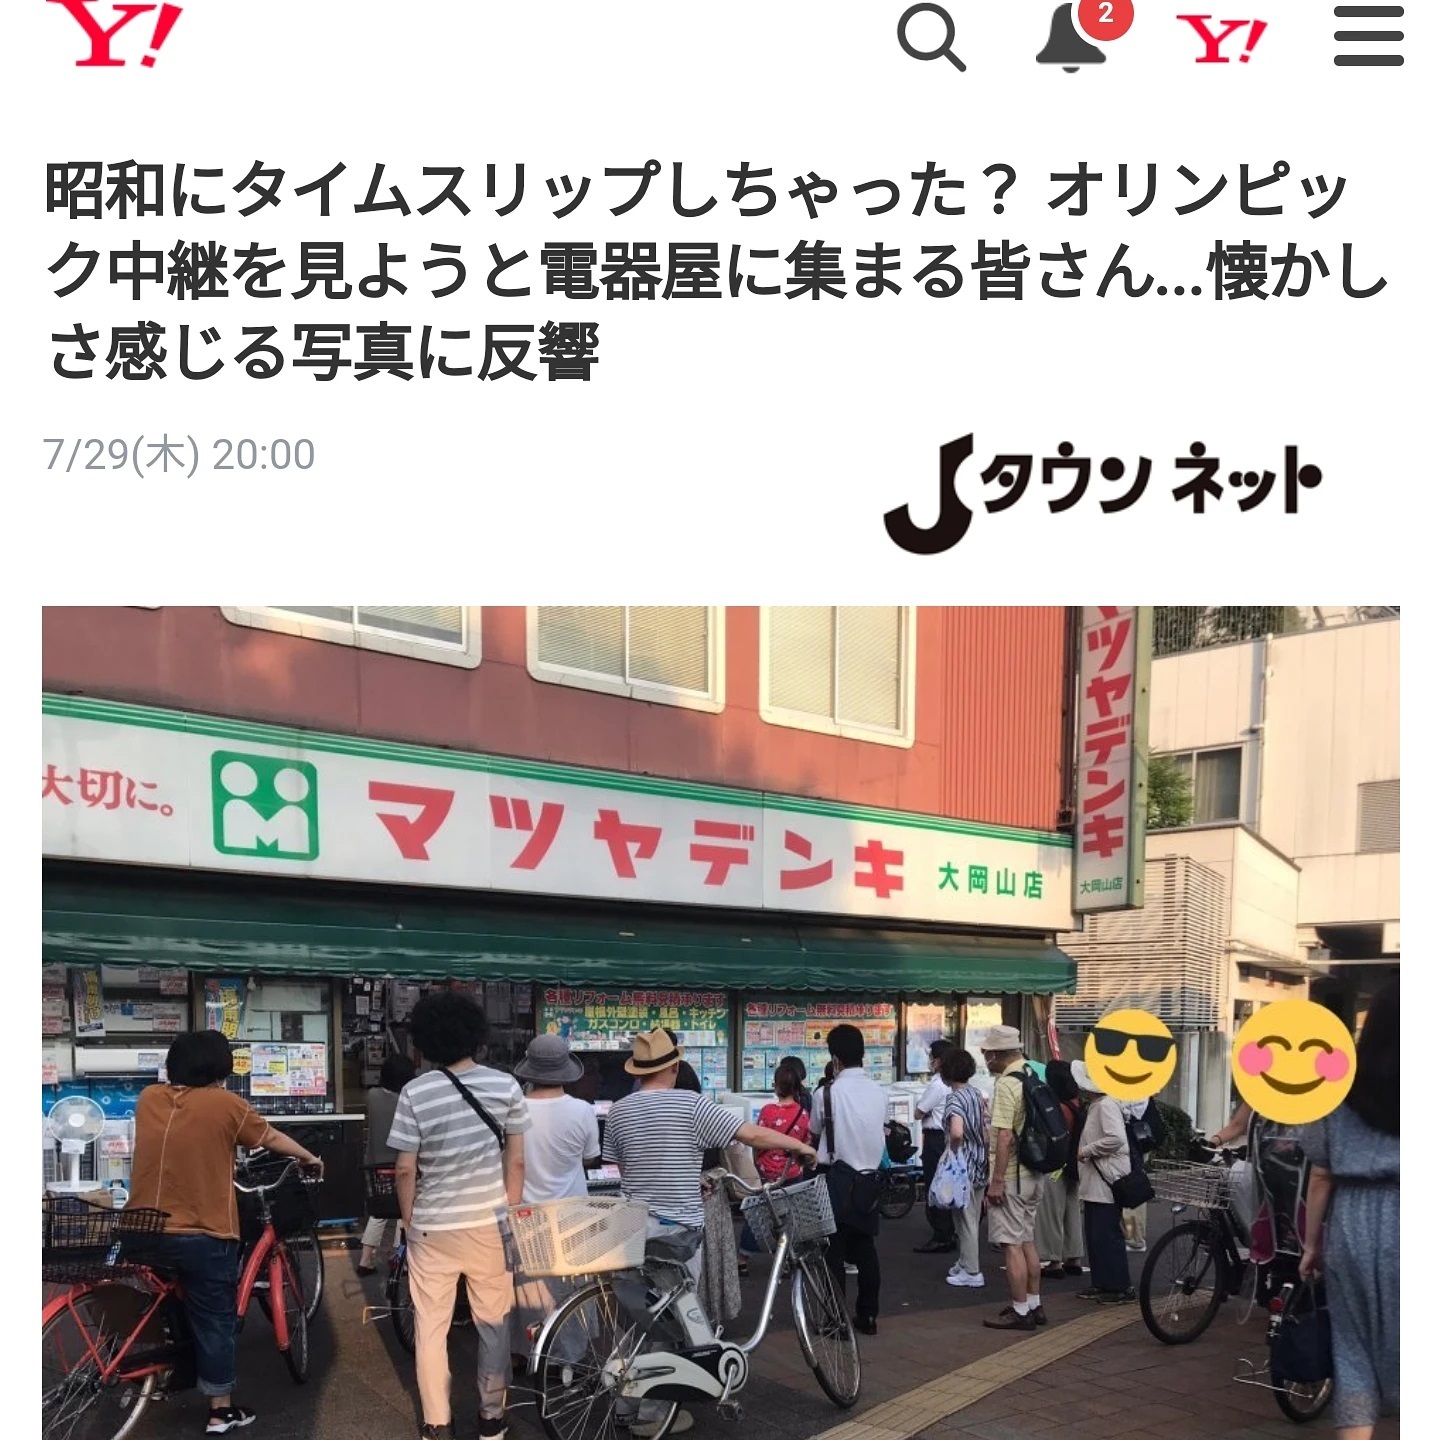 [ 【地元ネタ】ヤフーのトップニュースで地元の電気屋が全国区となる昭和的なイメージを大切にフォーカスされている事に感謝。ウチもココとのお付き合いは古く、先日も洗濯機を買いました！生業業務の一つ、朝の駅立ちは店の前でしてます(^_^;)！https://article.yahoo.co.jp/detail/d9a2a3a2a53203a10ef4a5a7428c0532a6358cd6 ]